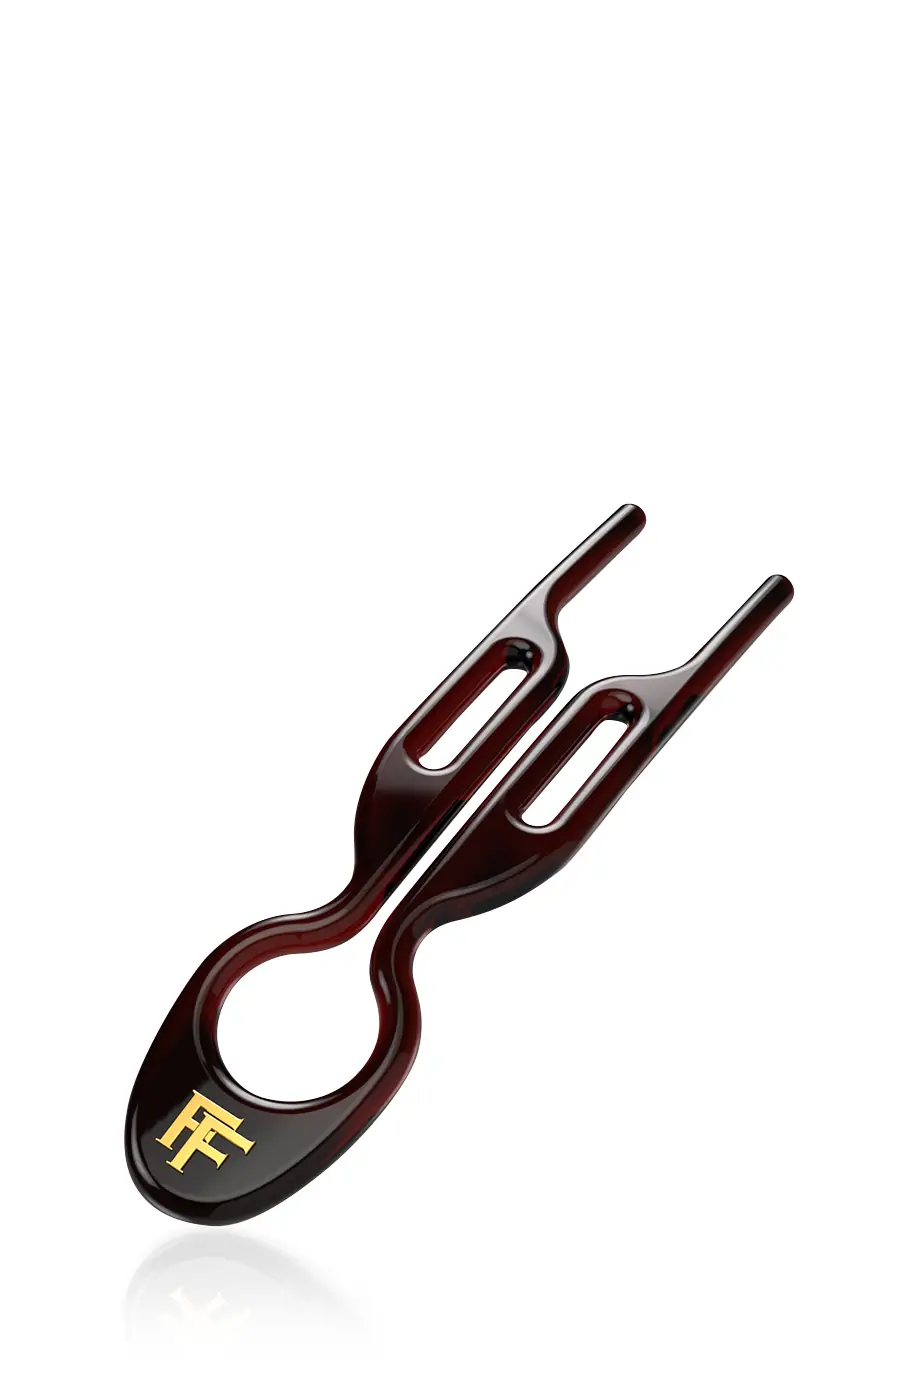 Шпильки No1 Hairpin Коричневого цвета (набор из 5 шпилек) в интернет-магазине Authentica.love